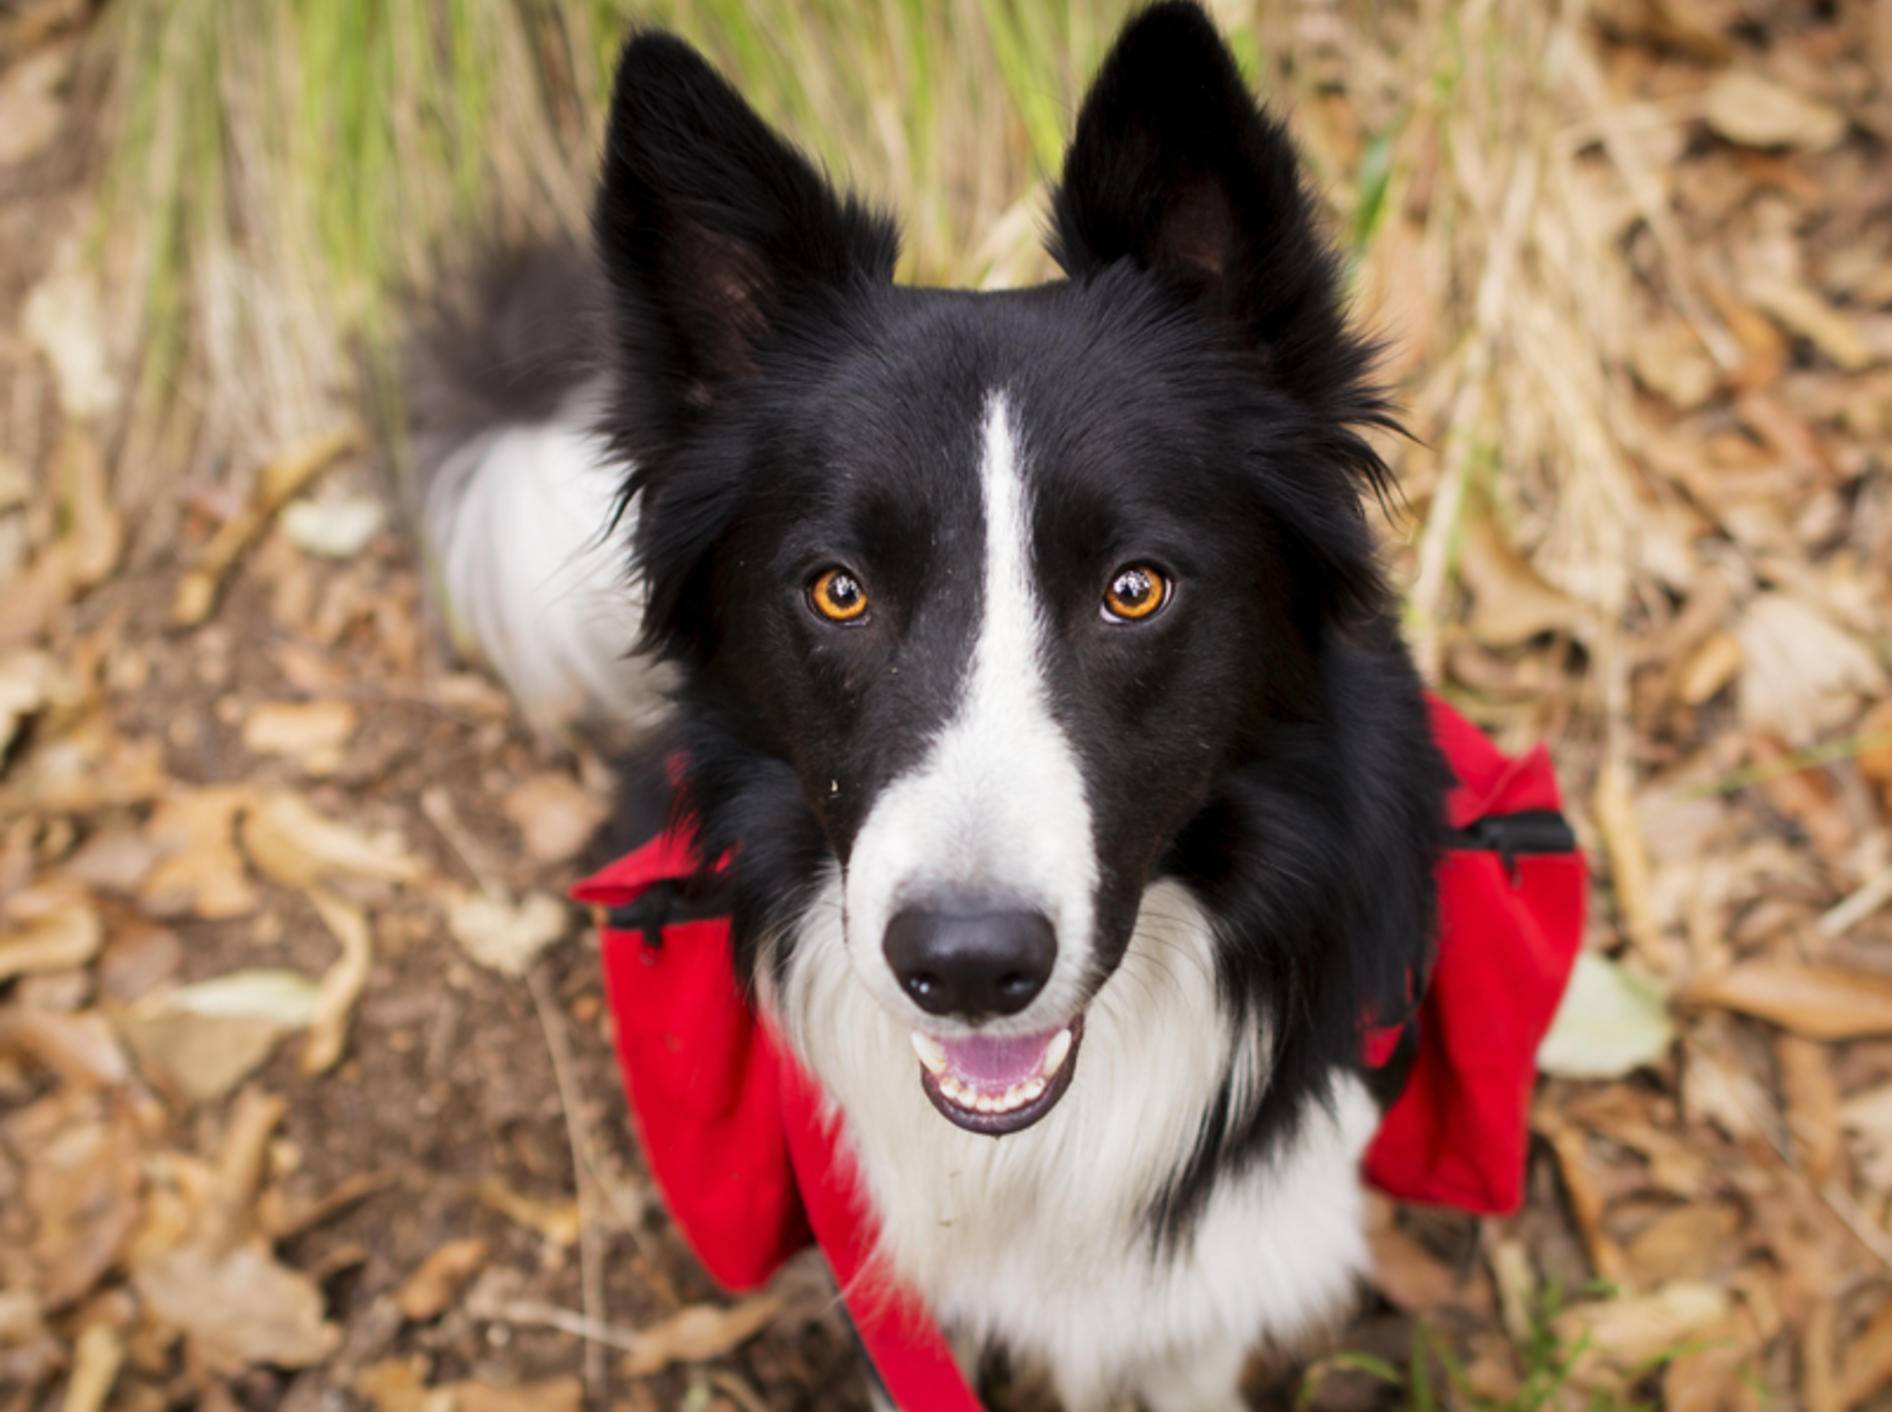 Welche Ausrüstung braucht man, wenn man mit dem Hund wandern geht? - Bild: Shutterstock / jos macouzet